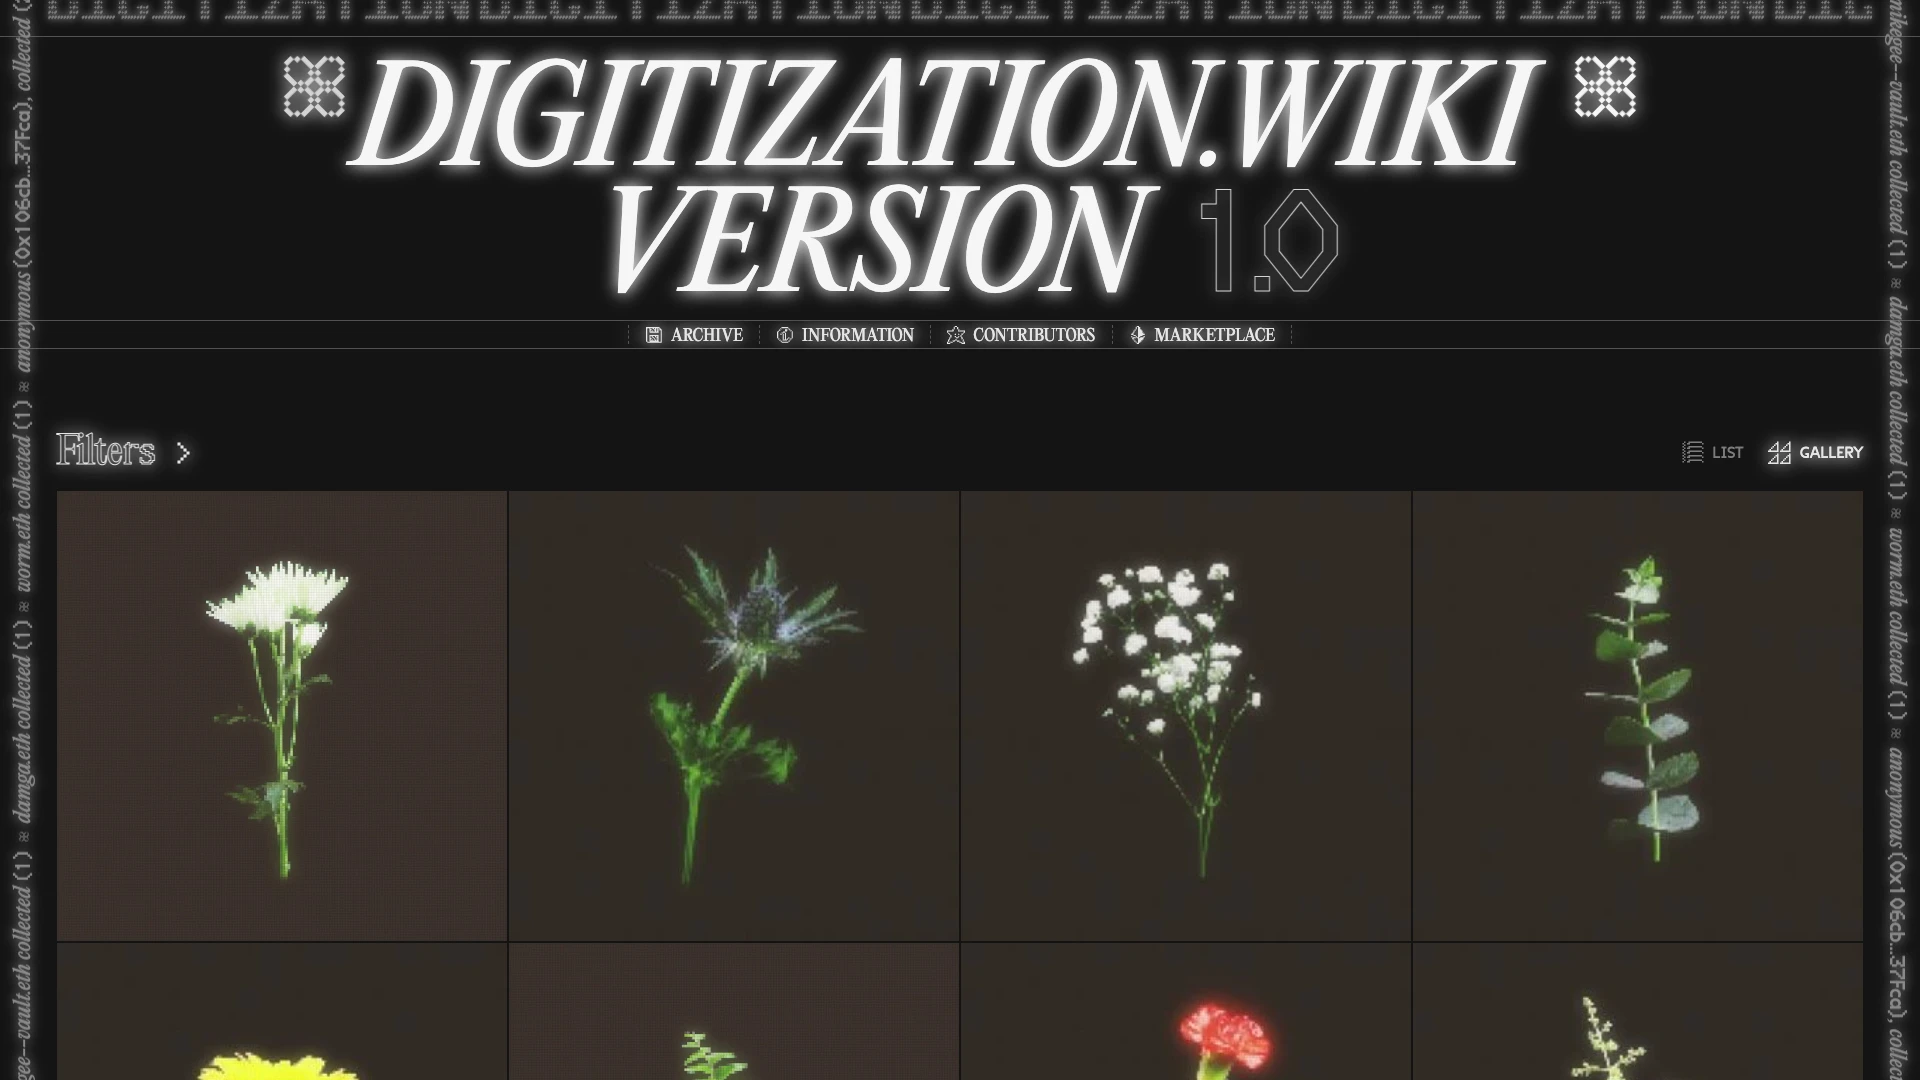 DIGITIZATION.wiki